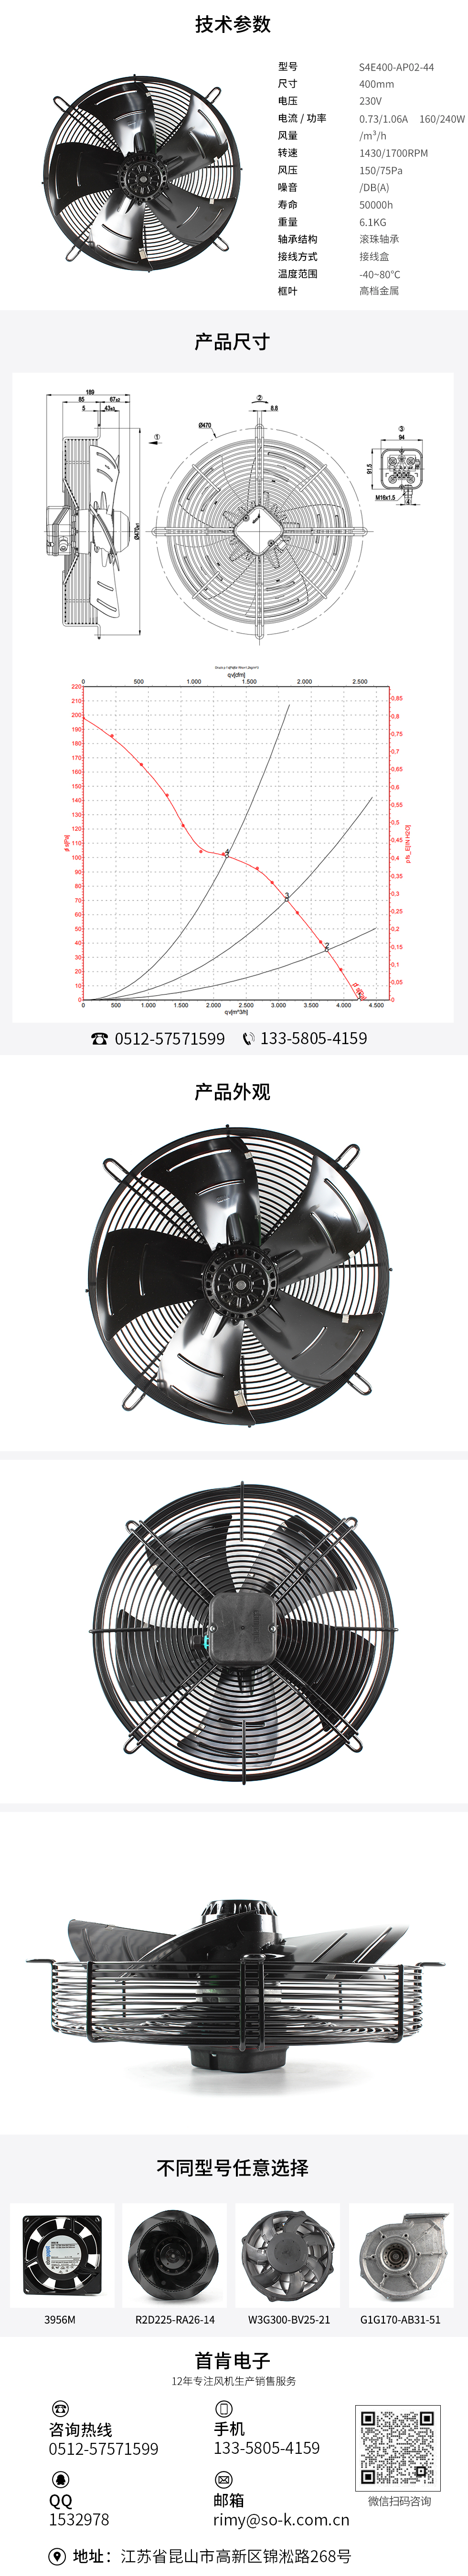 轴流散热风扇报价,小型轴流散热风扇厂家,交流散热风扇品牌,S4E400-AP02-44